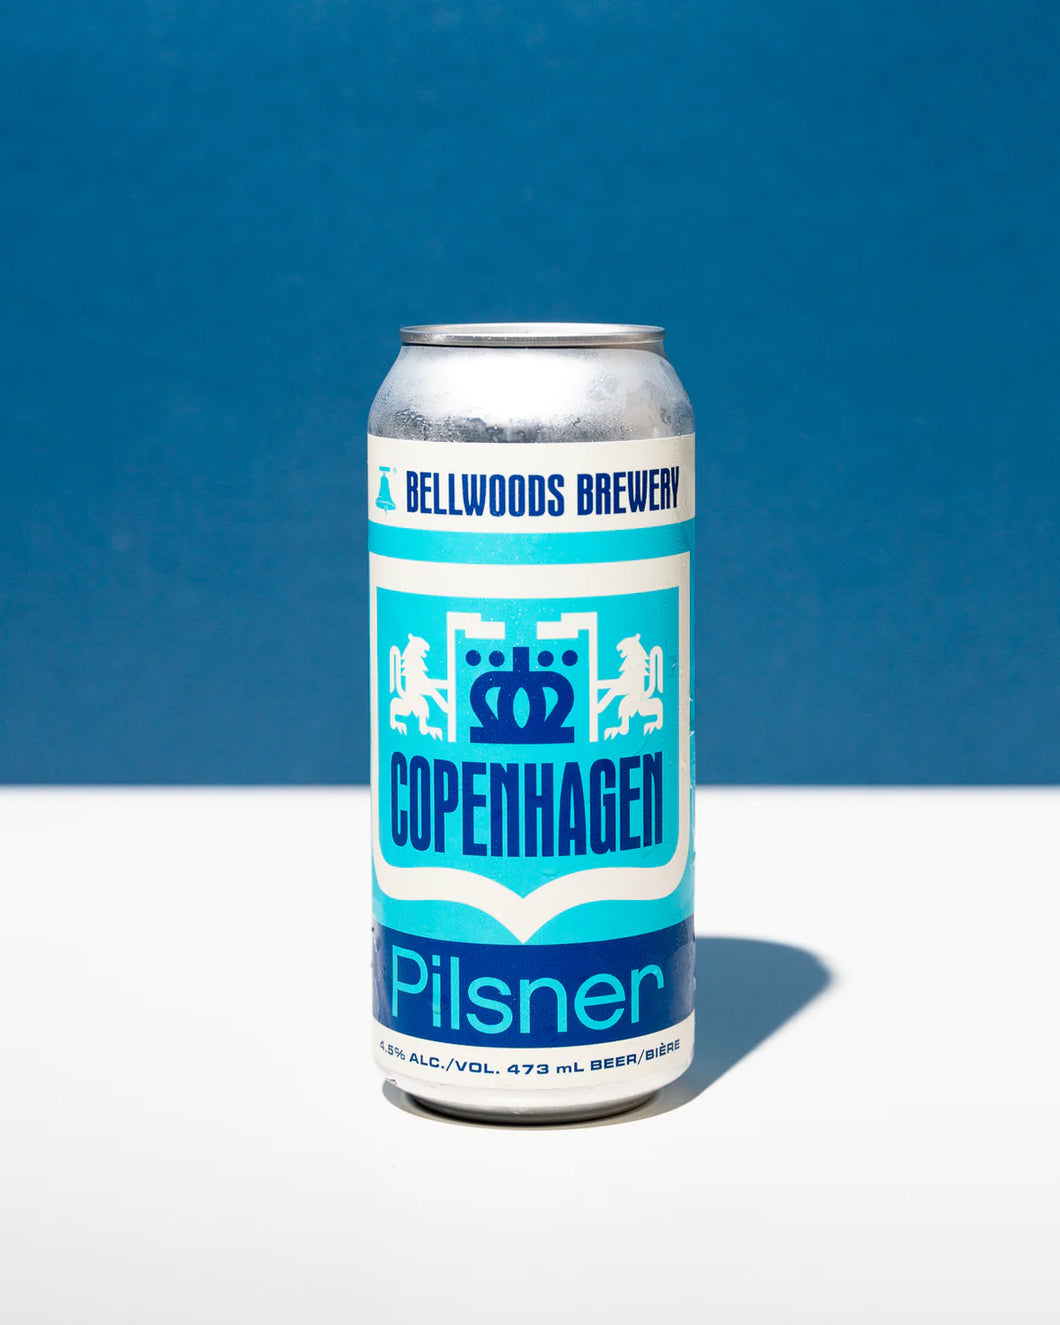 Copenhagen Pilsner - Bellwoods Brewery